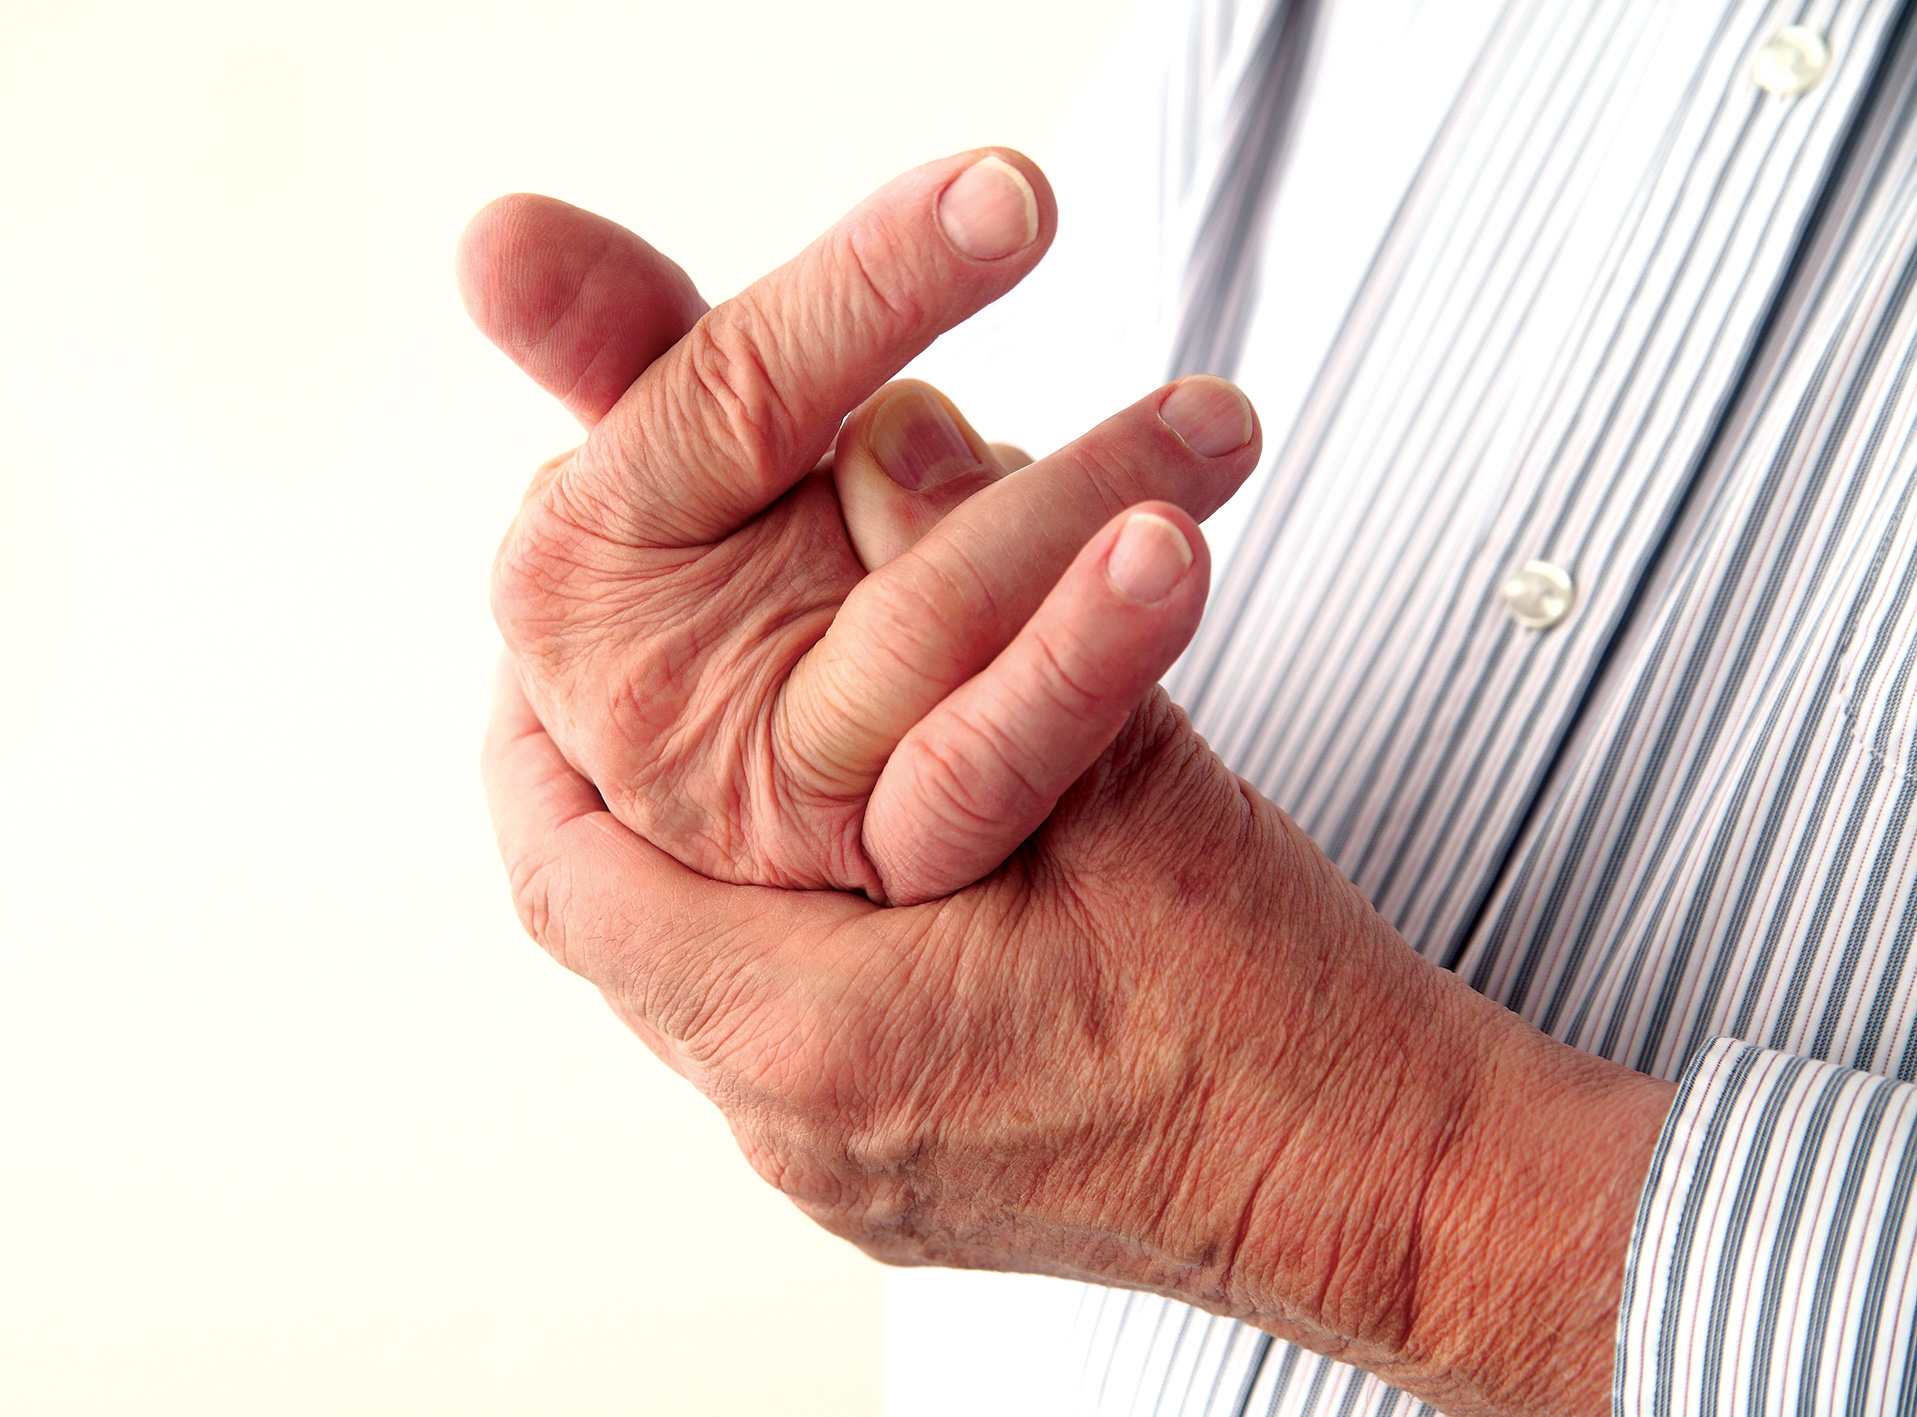 Ai đang có nguy cơ mắc bệnh gout?